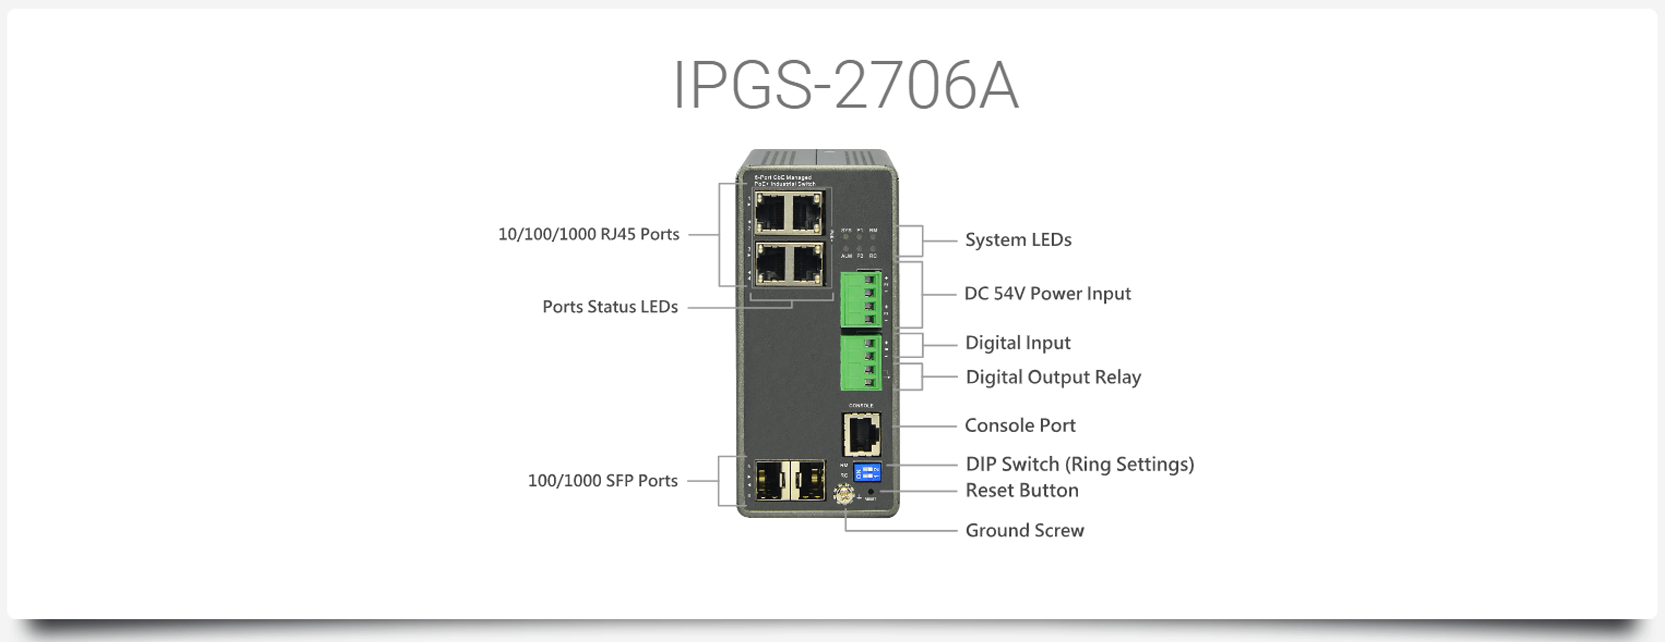 IPGS-2706A